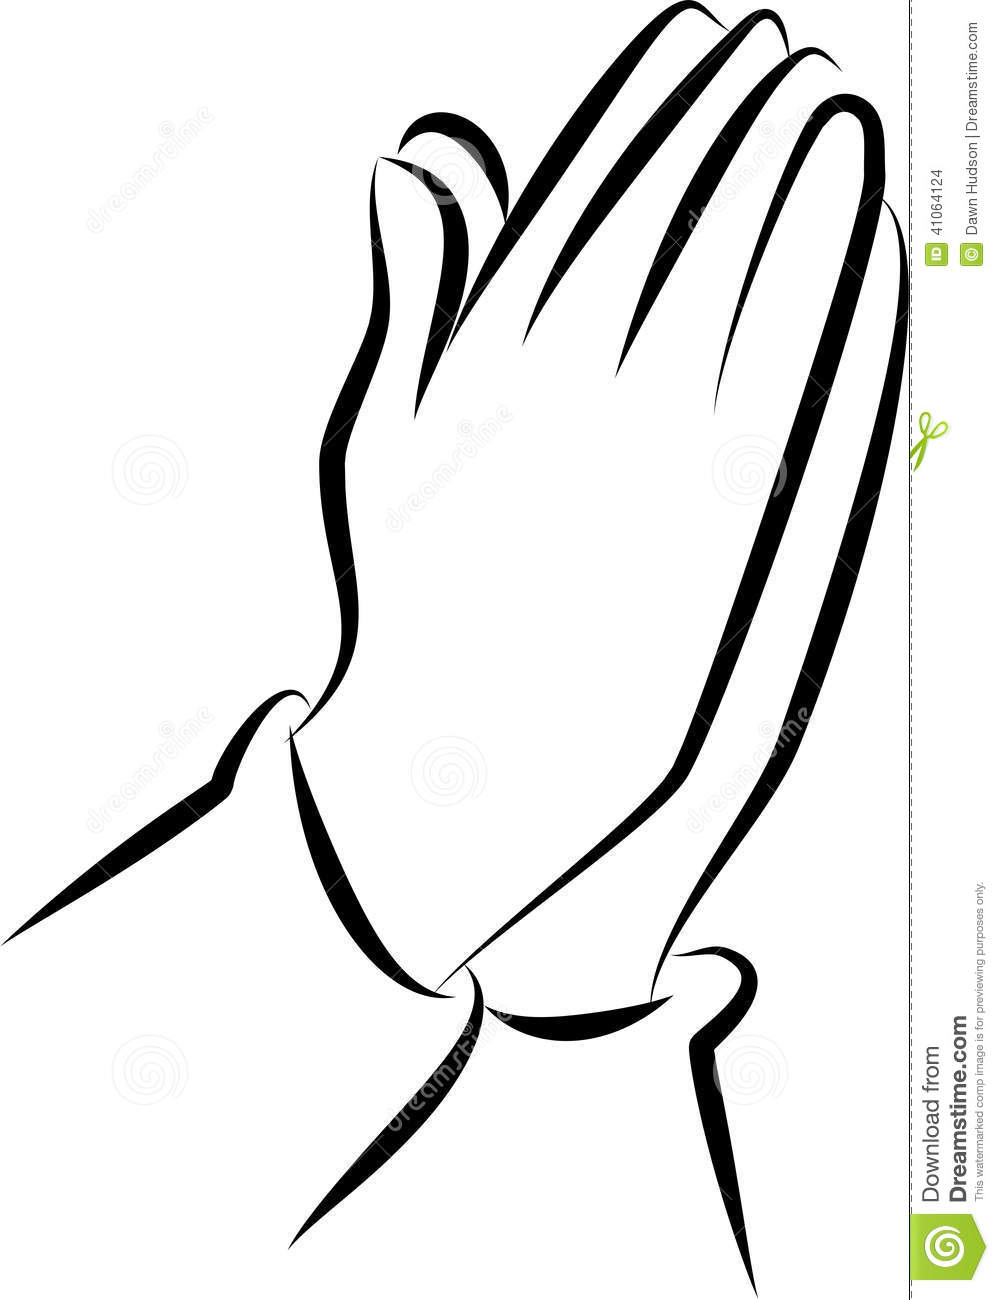 Praying hands prayer clip art